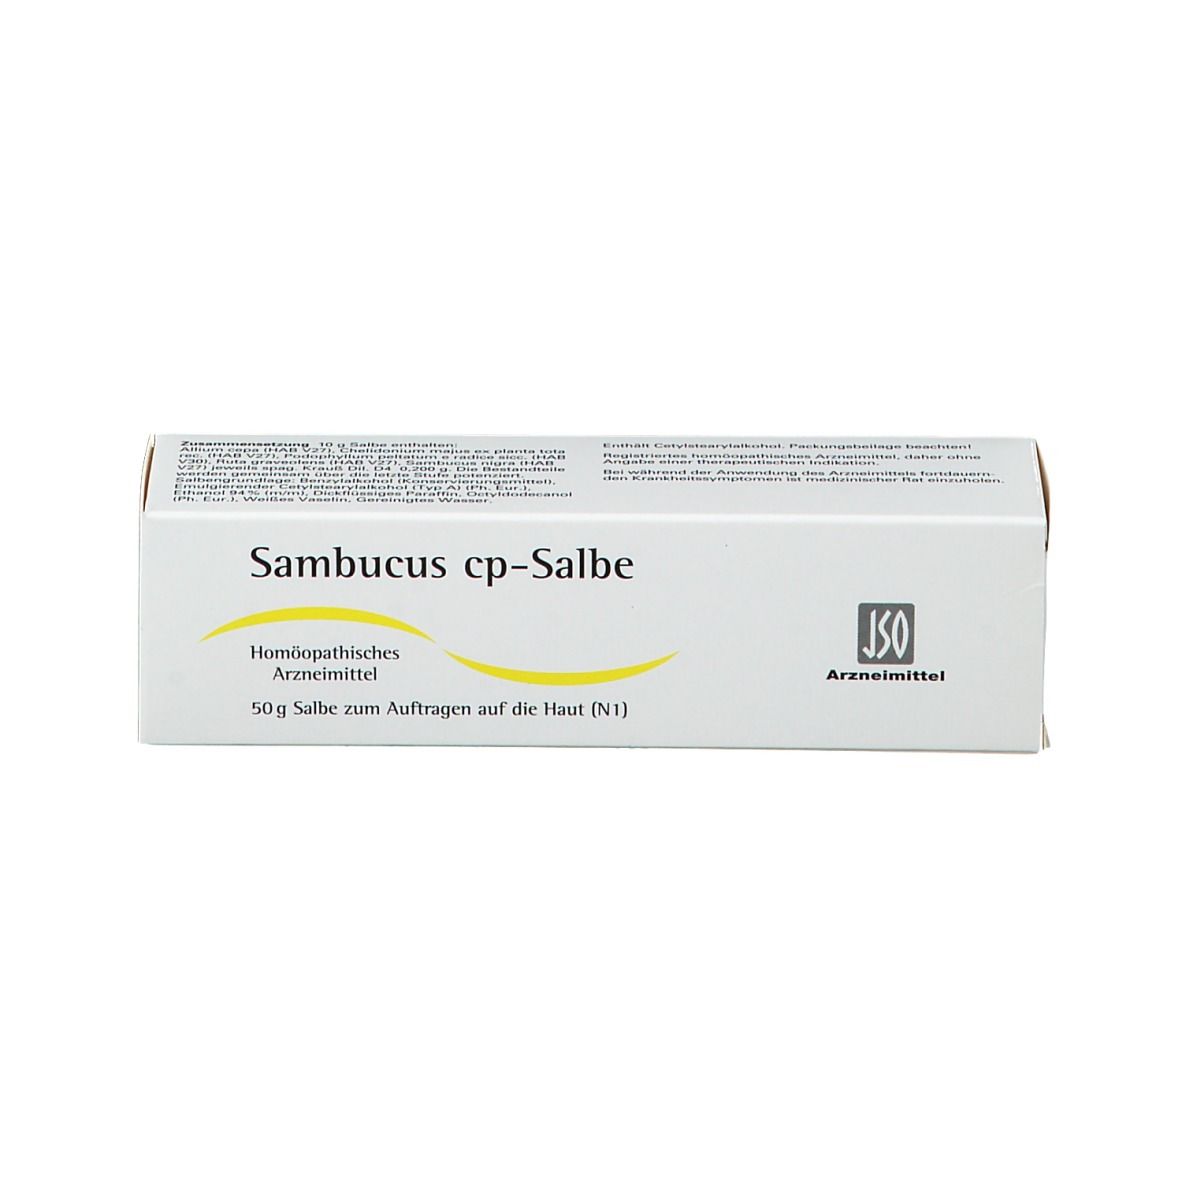 Sambucus cp-Salbe